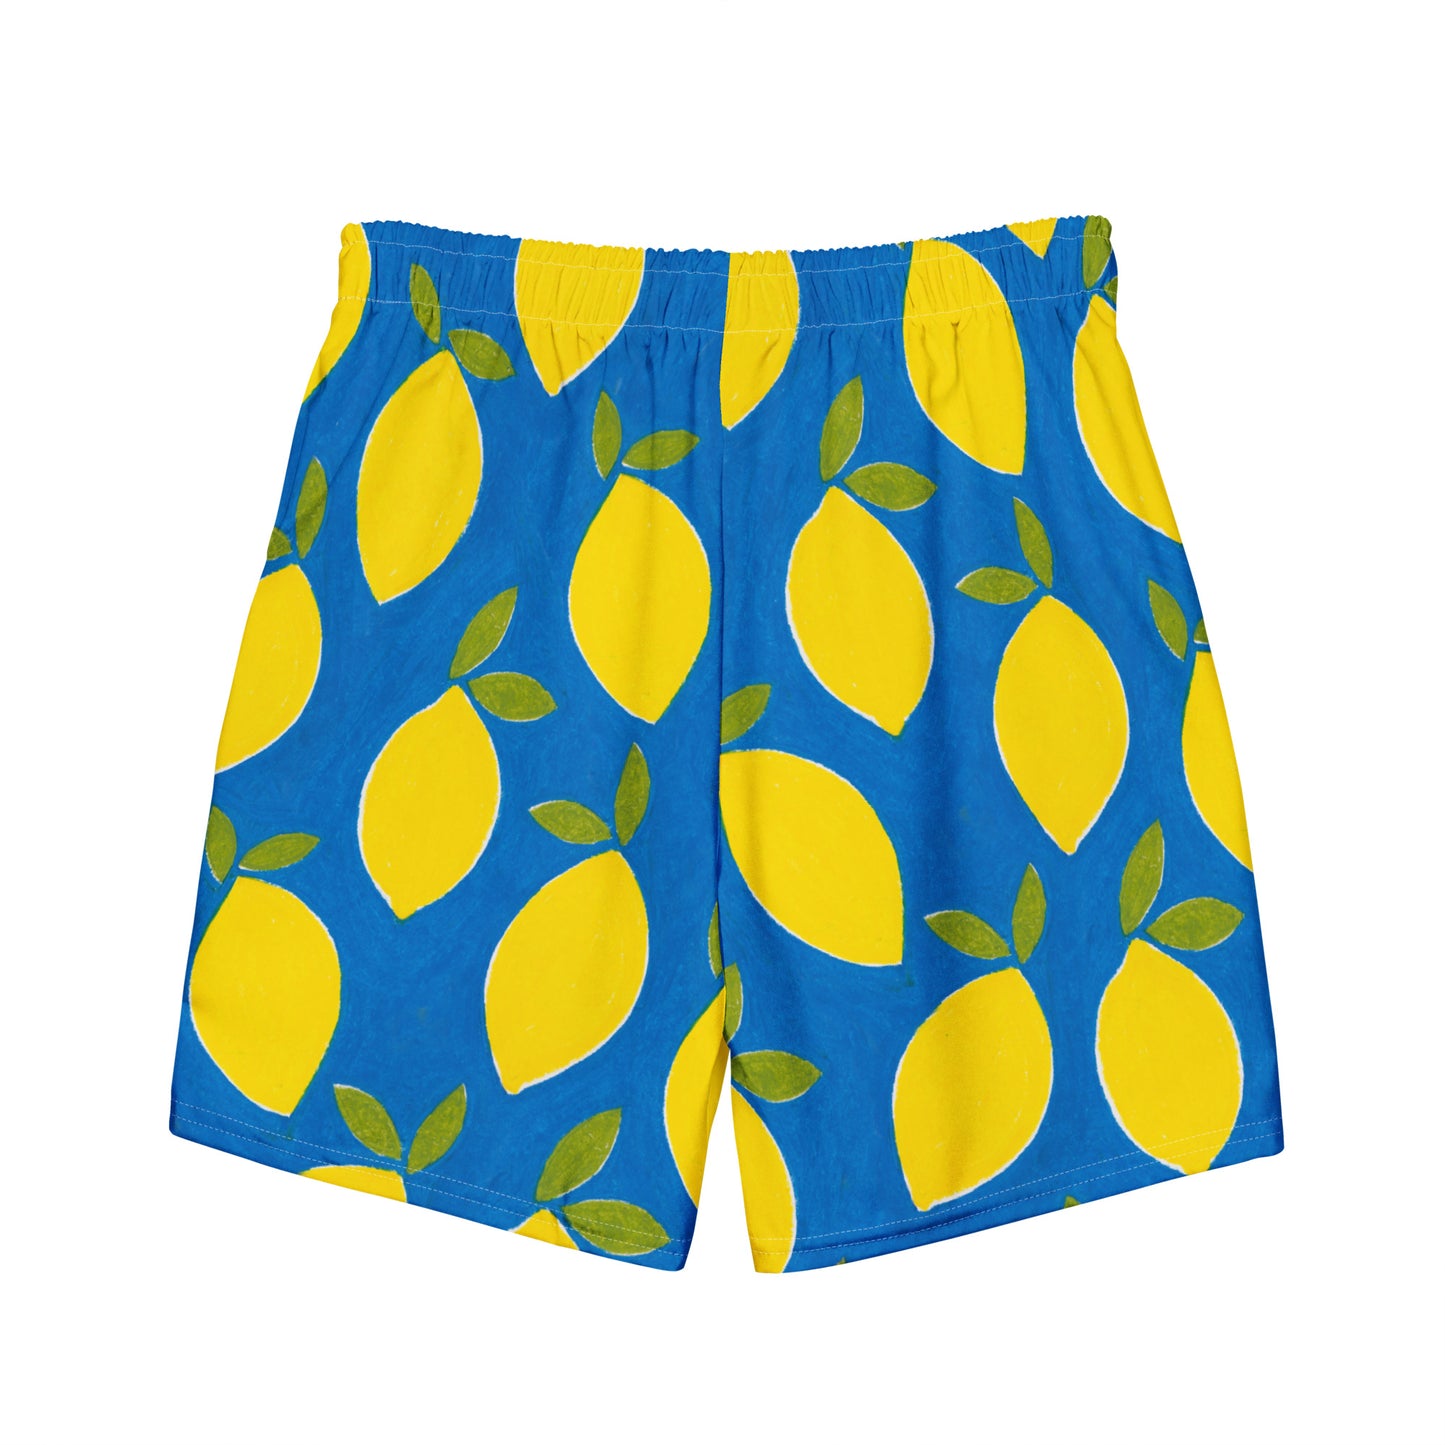 ♻️ Lemons Recycled Men's Swim Trunks